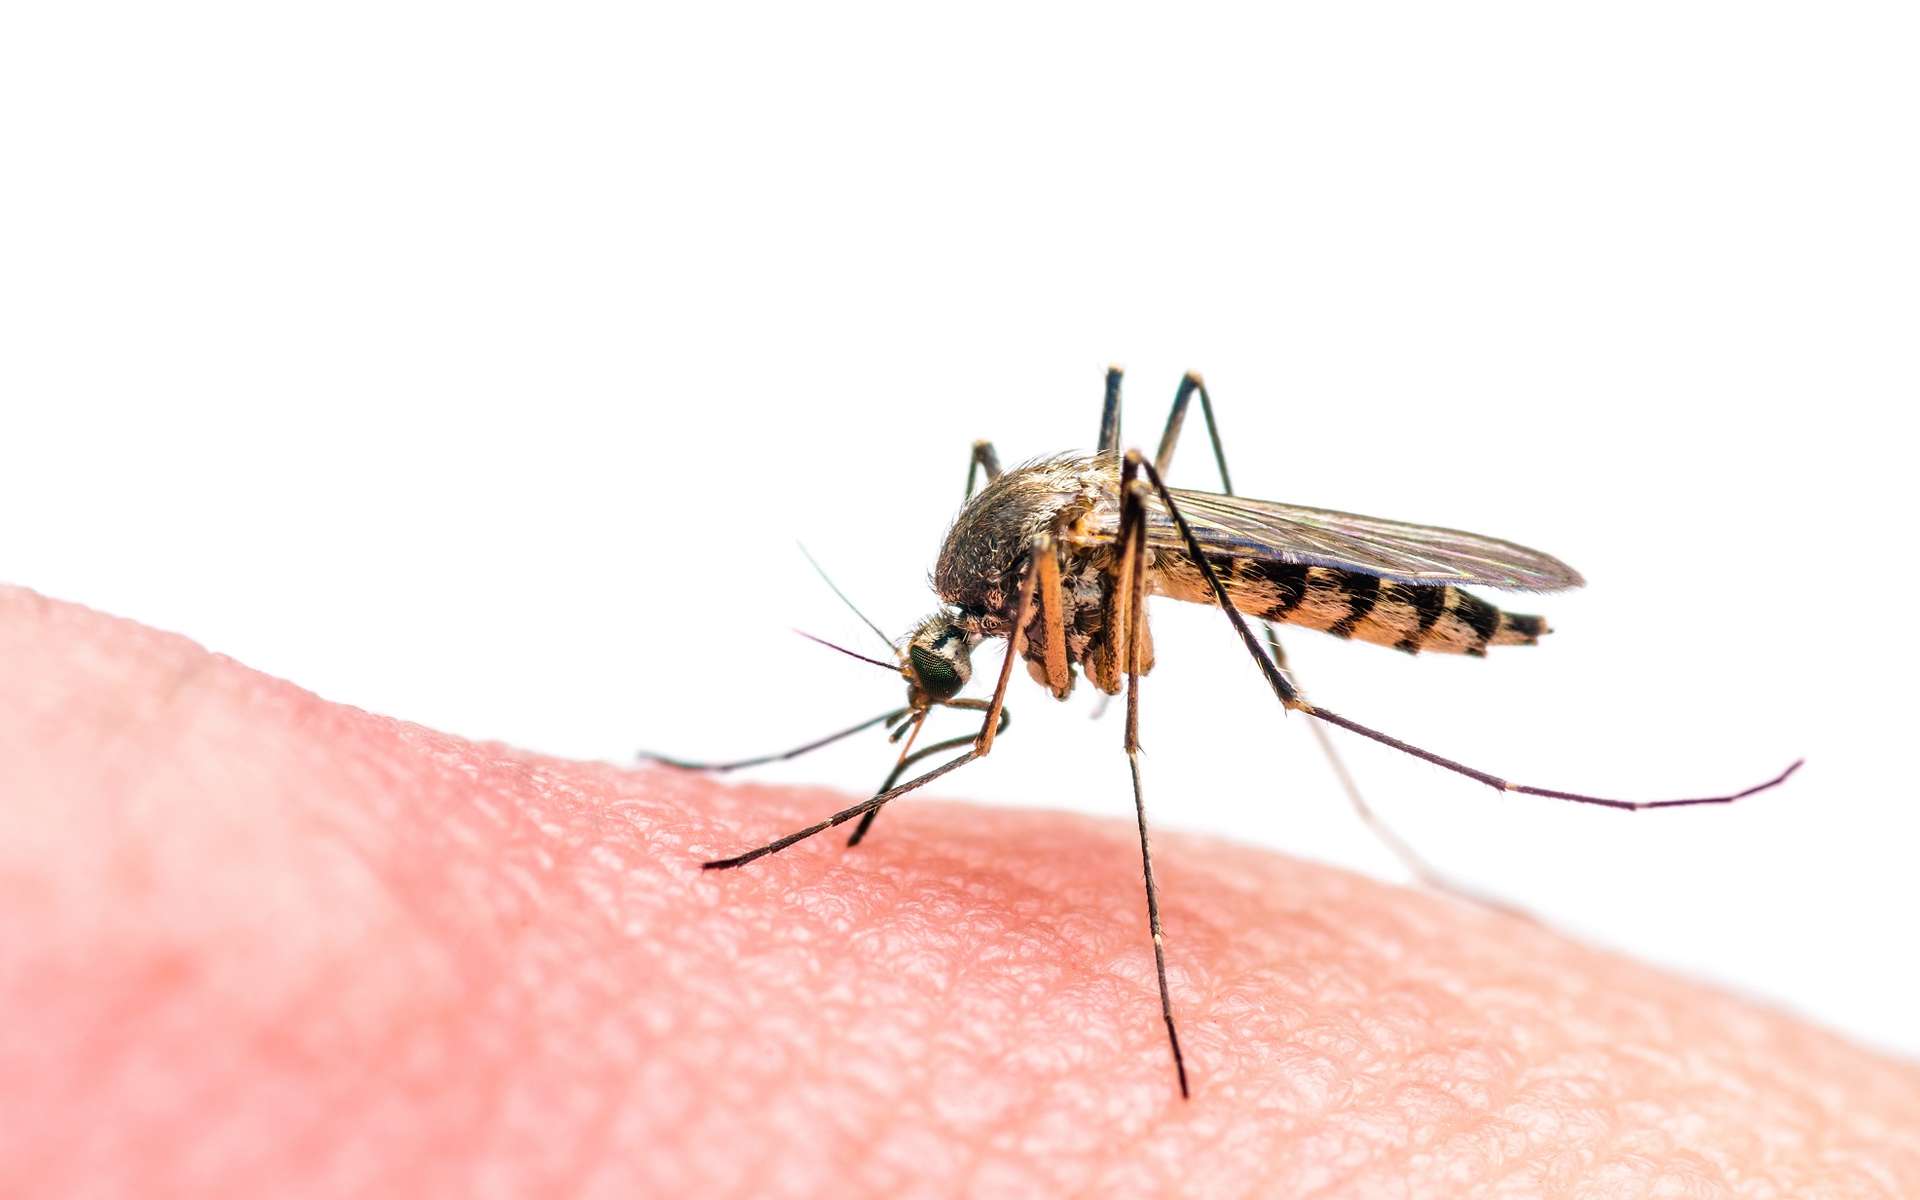 Le virus Zika est transmis par la piqûre de moustiques. © nechaevkon, Shutterstock